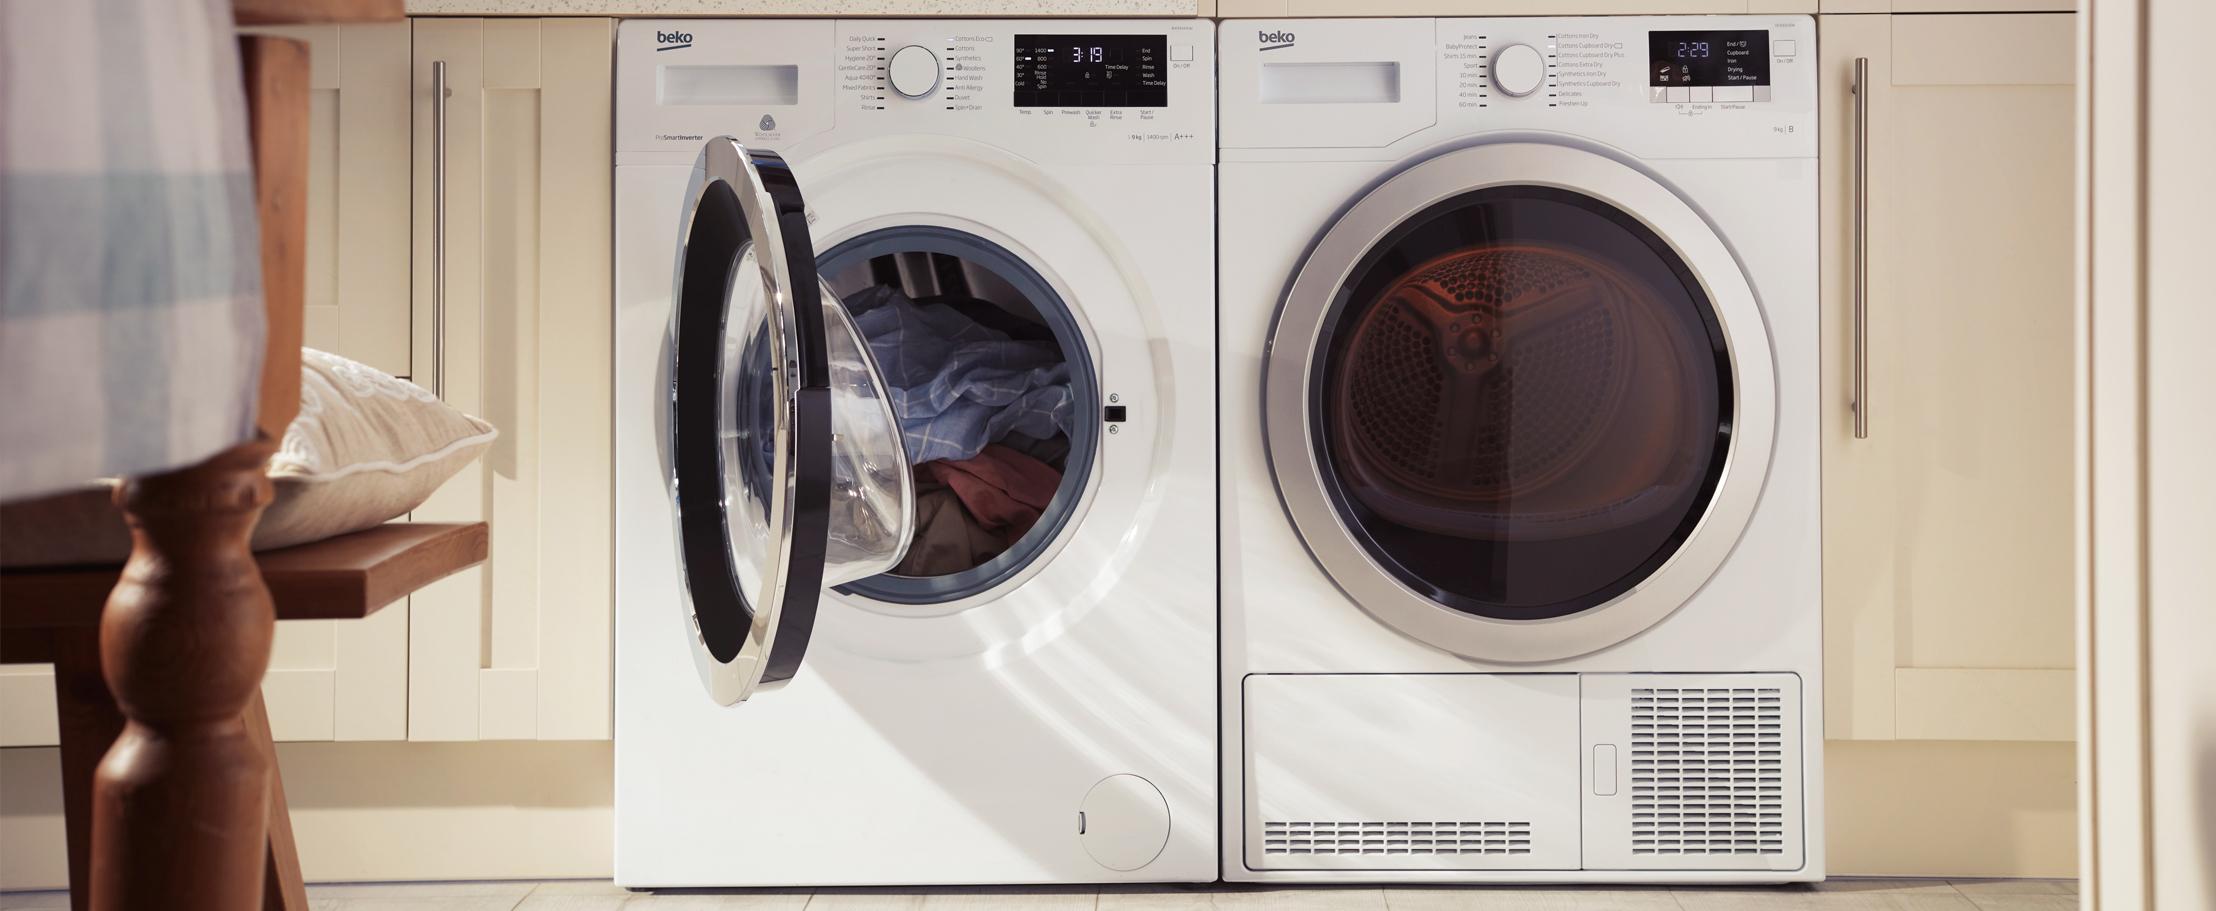 6 удивительных фактов о стиральных машинах, которые почти никто не знает